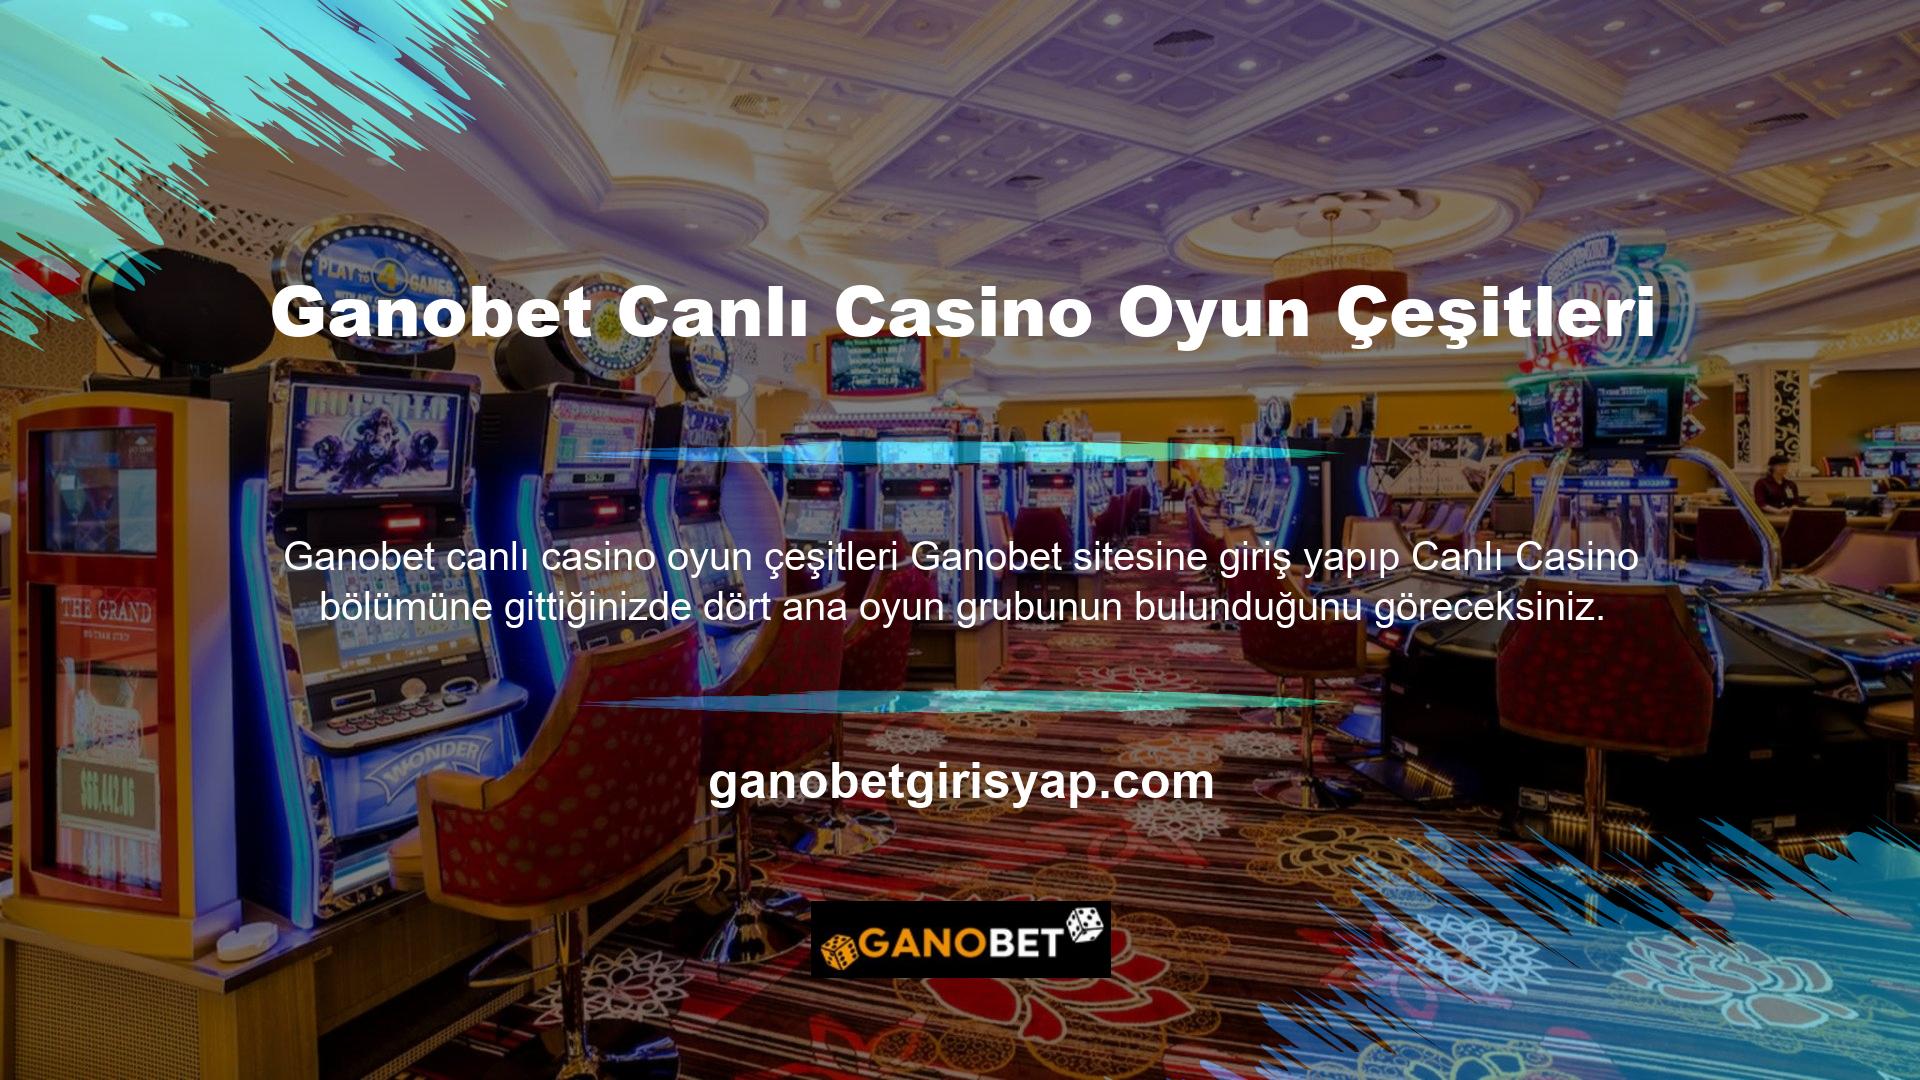 Bu dört ana oyun grubu olan Ganobet Canlı Casino Oyunları nelerdir? Sorunun ana temasını belirtir